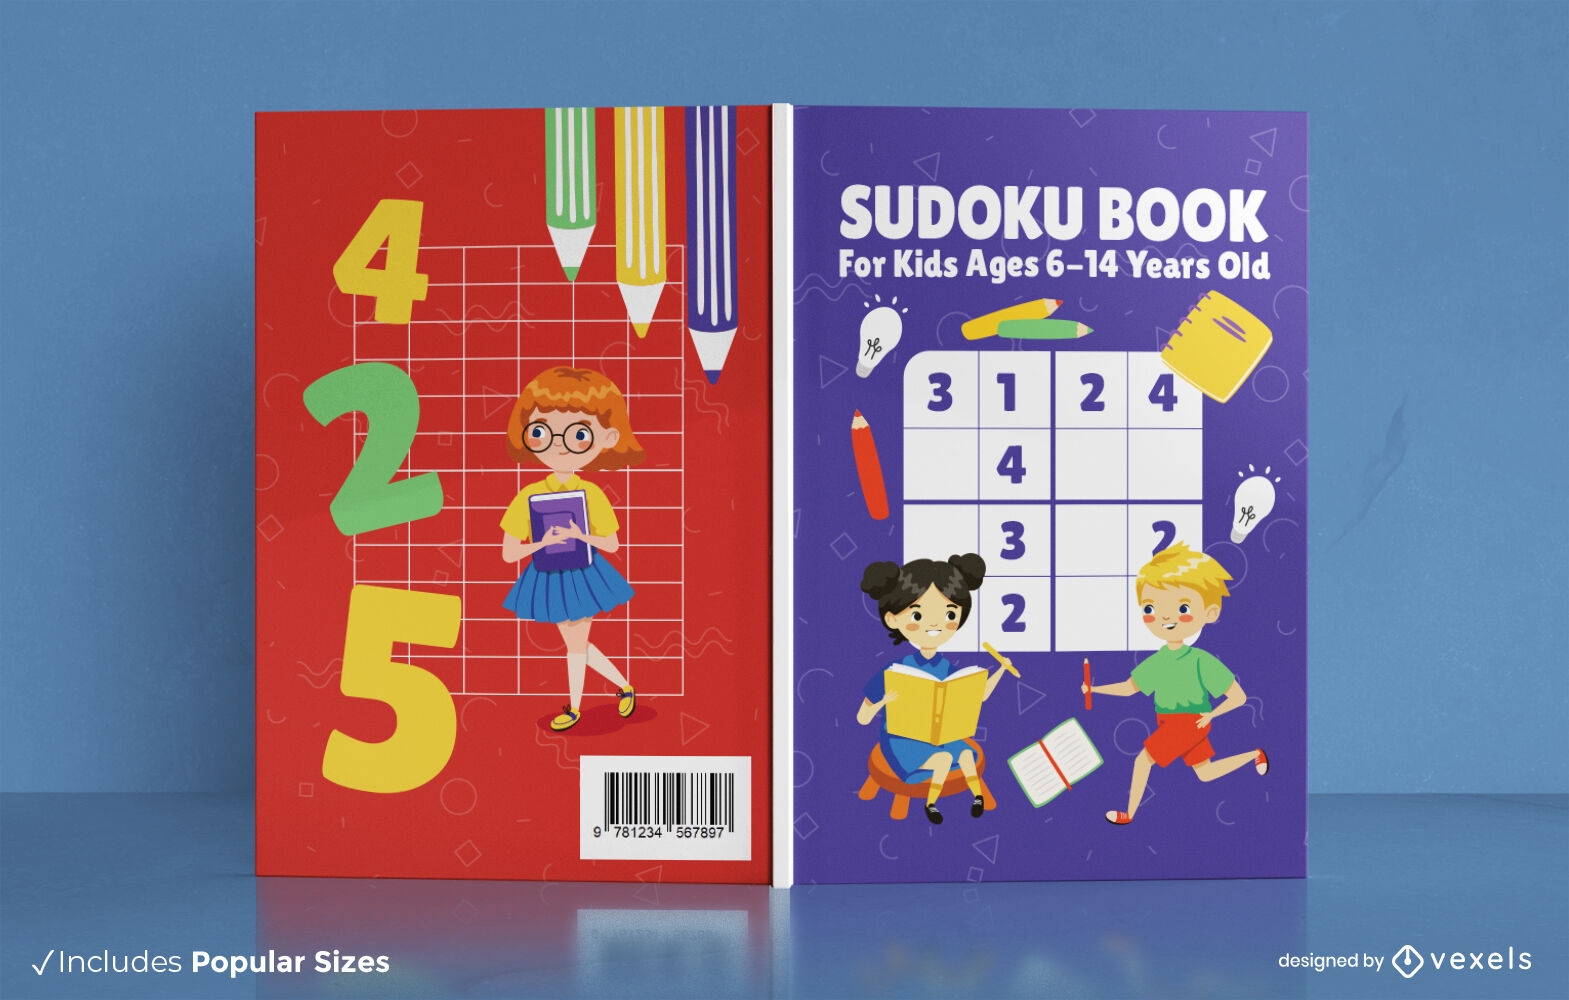 Crian?as brincando de design de capa de livro de sudoku